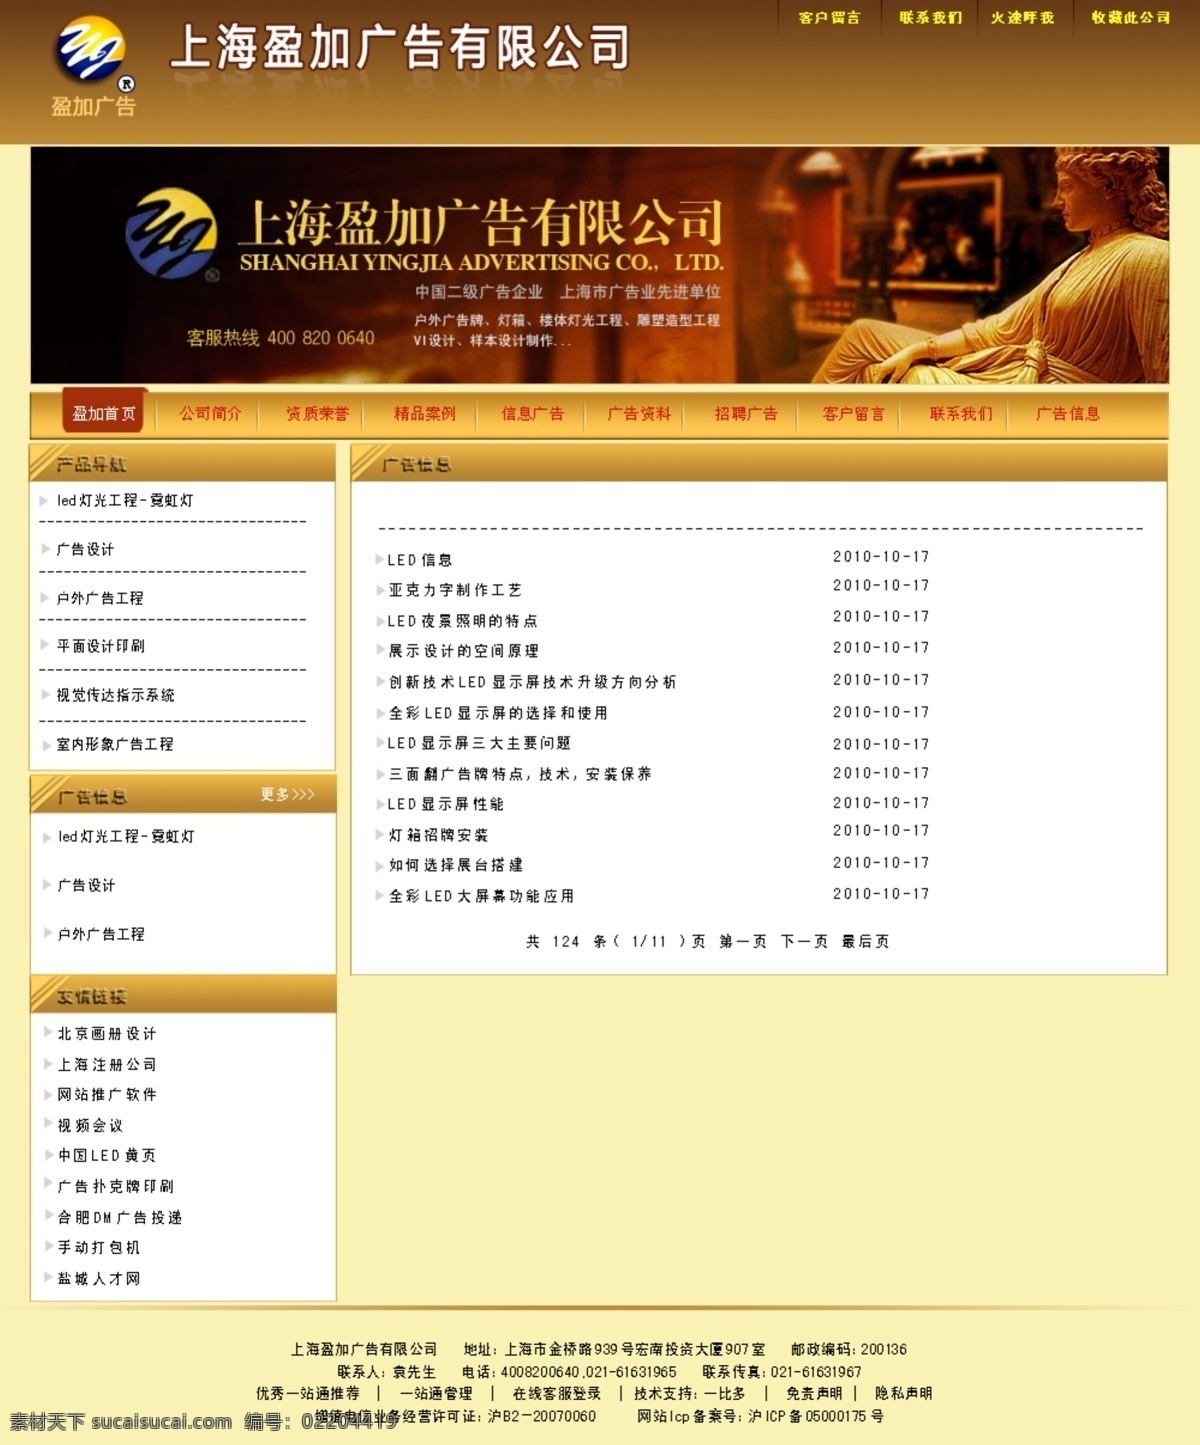 logo 雕像 广告公司 网页模板 色彩搭配 上海 网站小图标 盈加 广告信息 产品导航 中文模版 源文件 网页素材